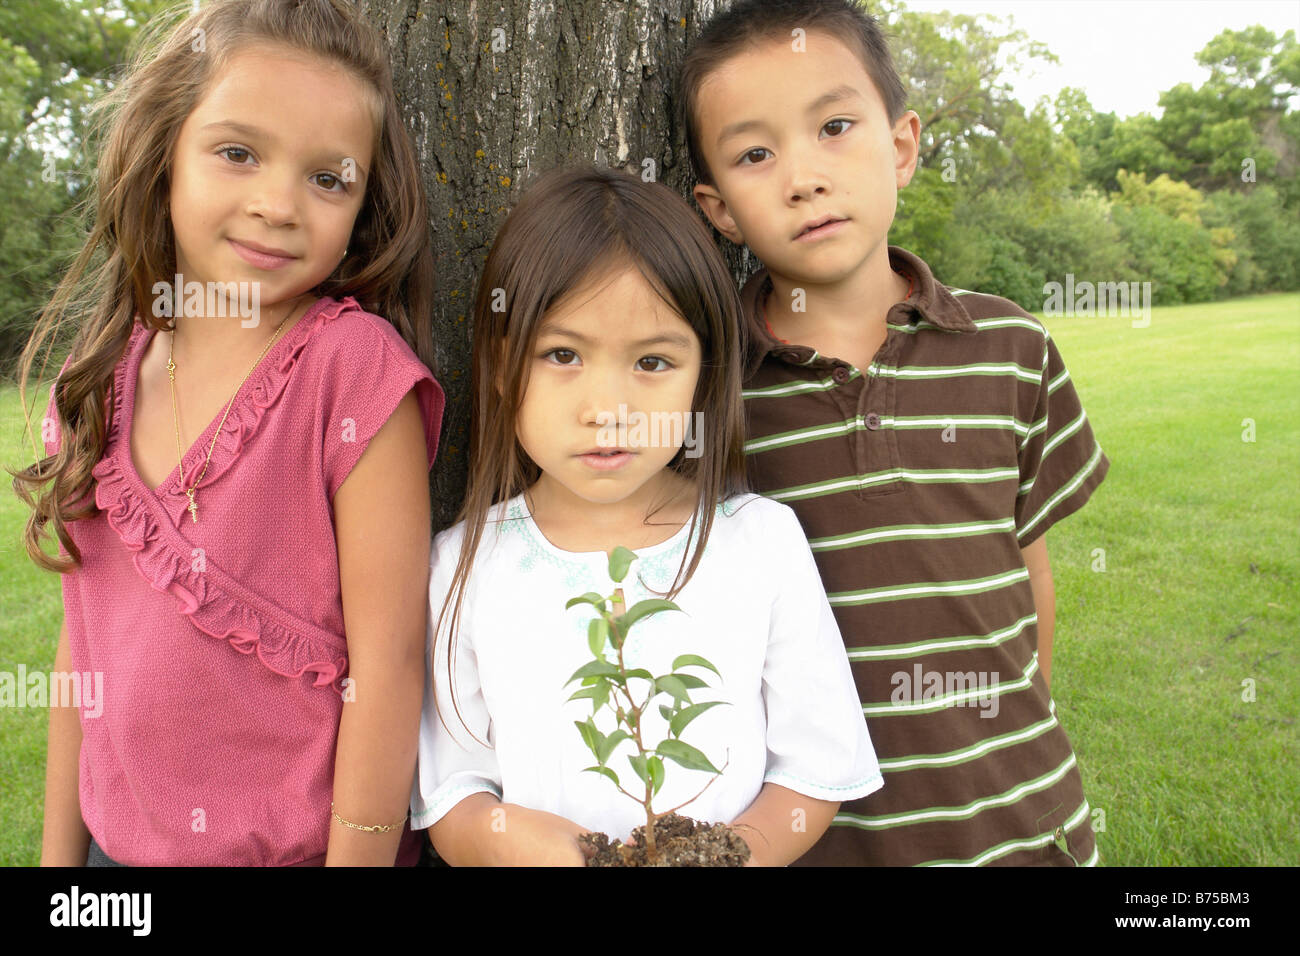 Fünf Jahre altes Mädchen hält Kleinbaum, neben sieben Jahre alten Jungen und Mädchen, Winnipeg, Kanada Stockfoto